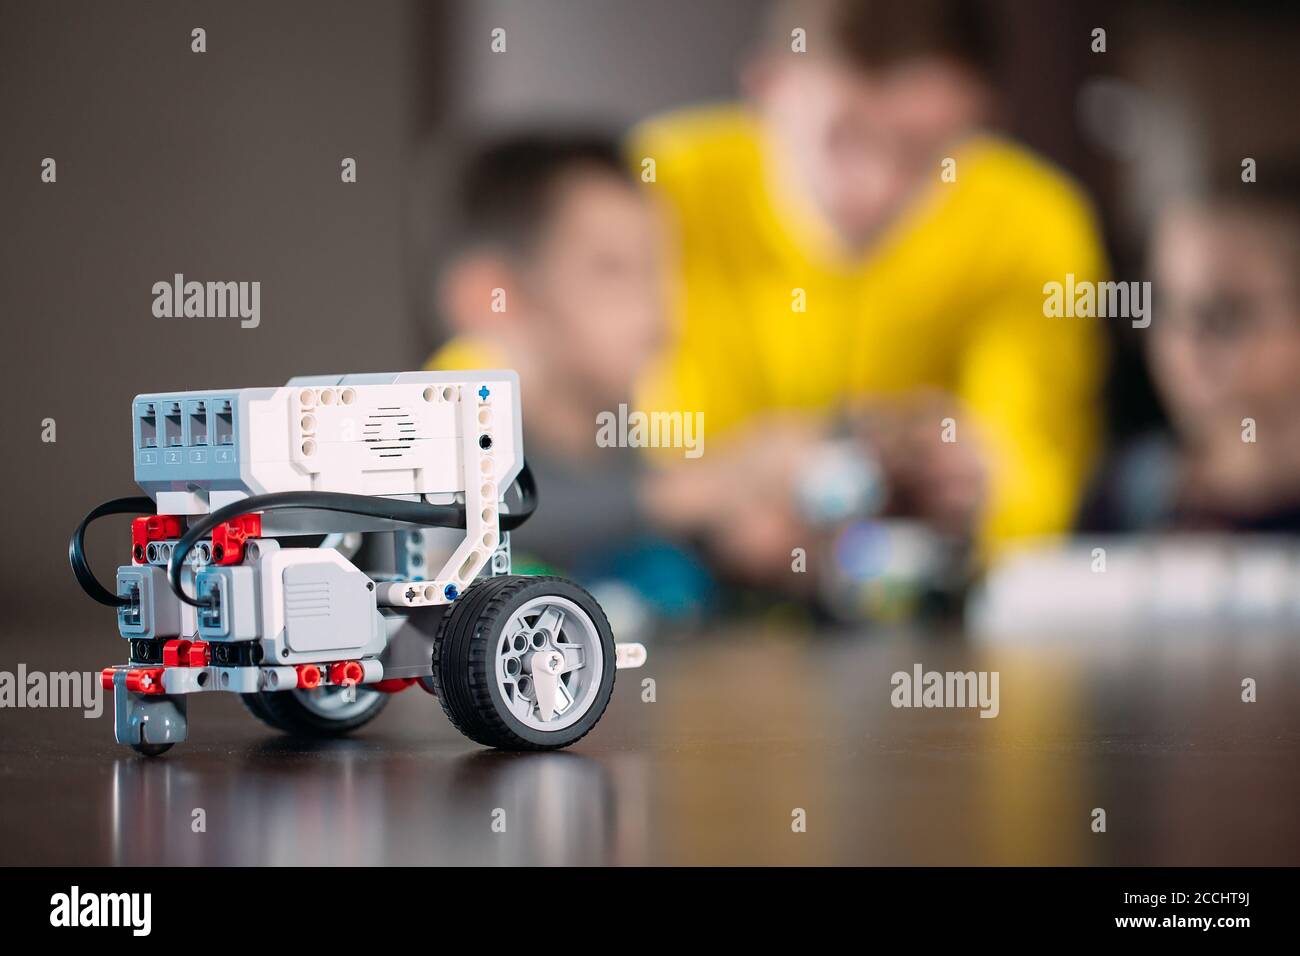 Les enfants créent des robots avec un professeur. Développement précoce, bricolage, innovation, concept de technologie moderne. Banque D'Images